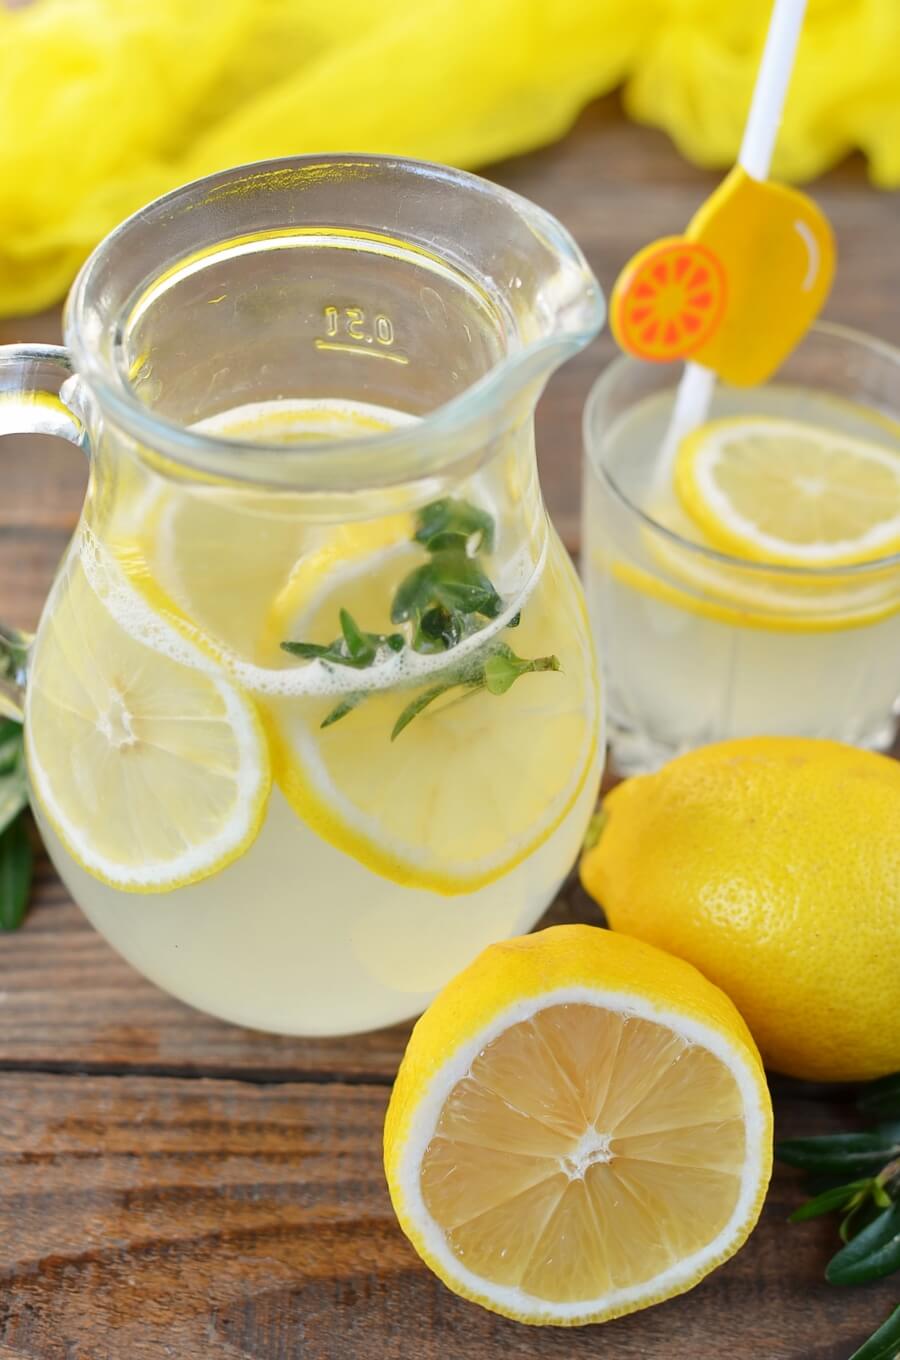 Authentic Homemade Lemonade Recipe Cook.me Recipes